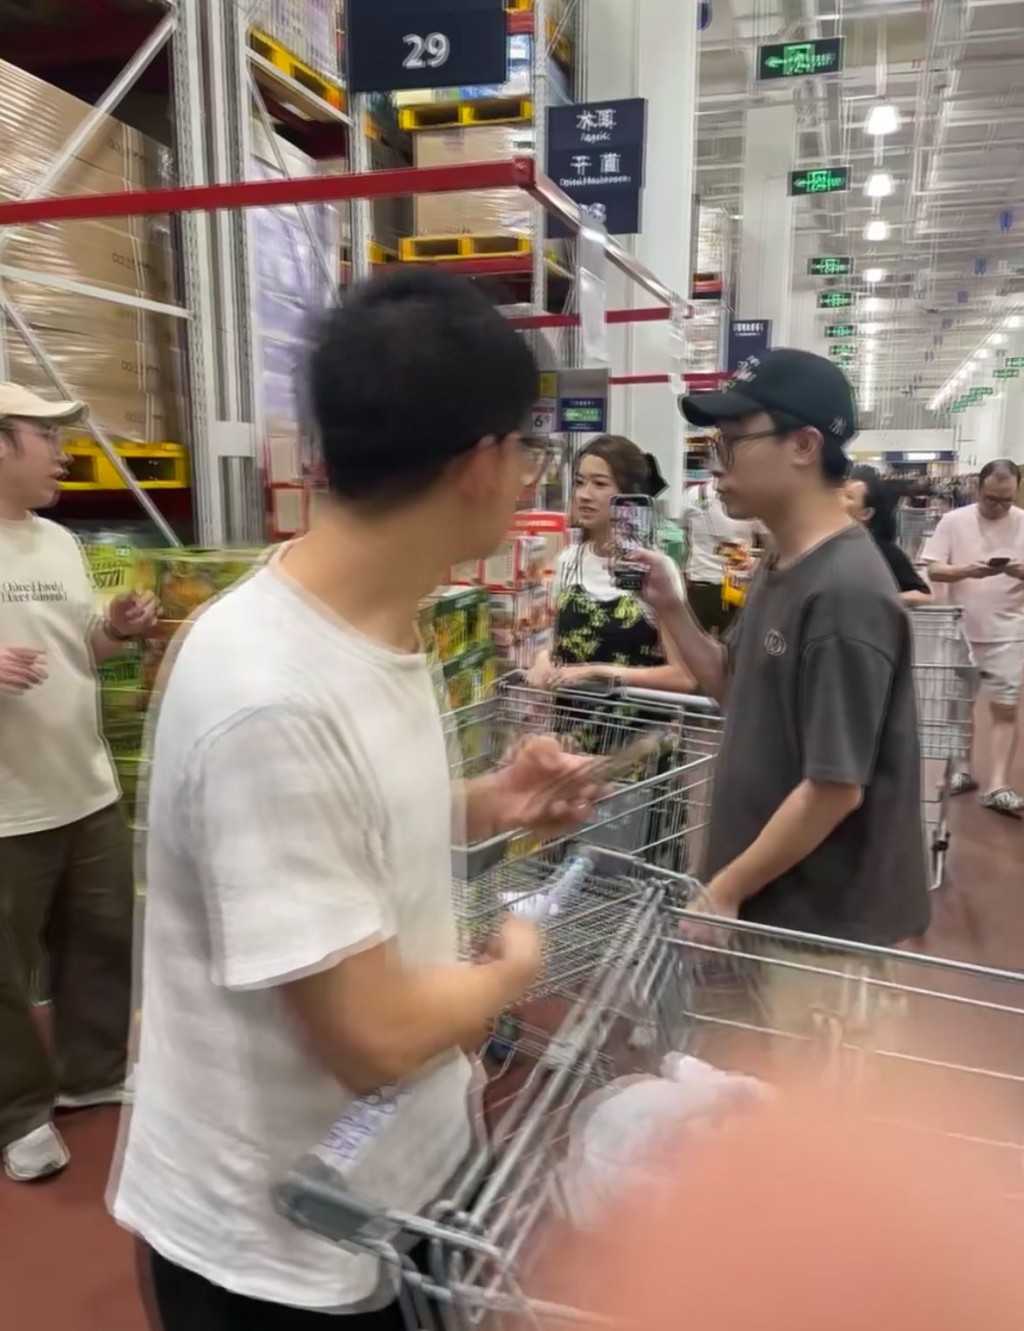 当时就有网民于大型仓储式超市山姆番禺分店巧遇蔡思贝。